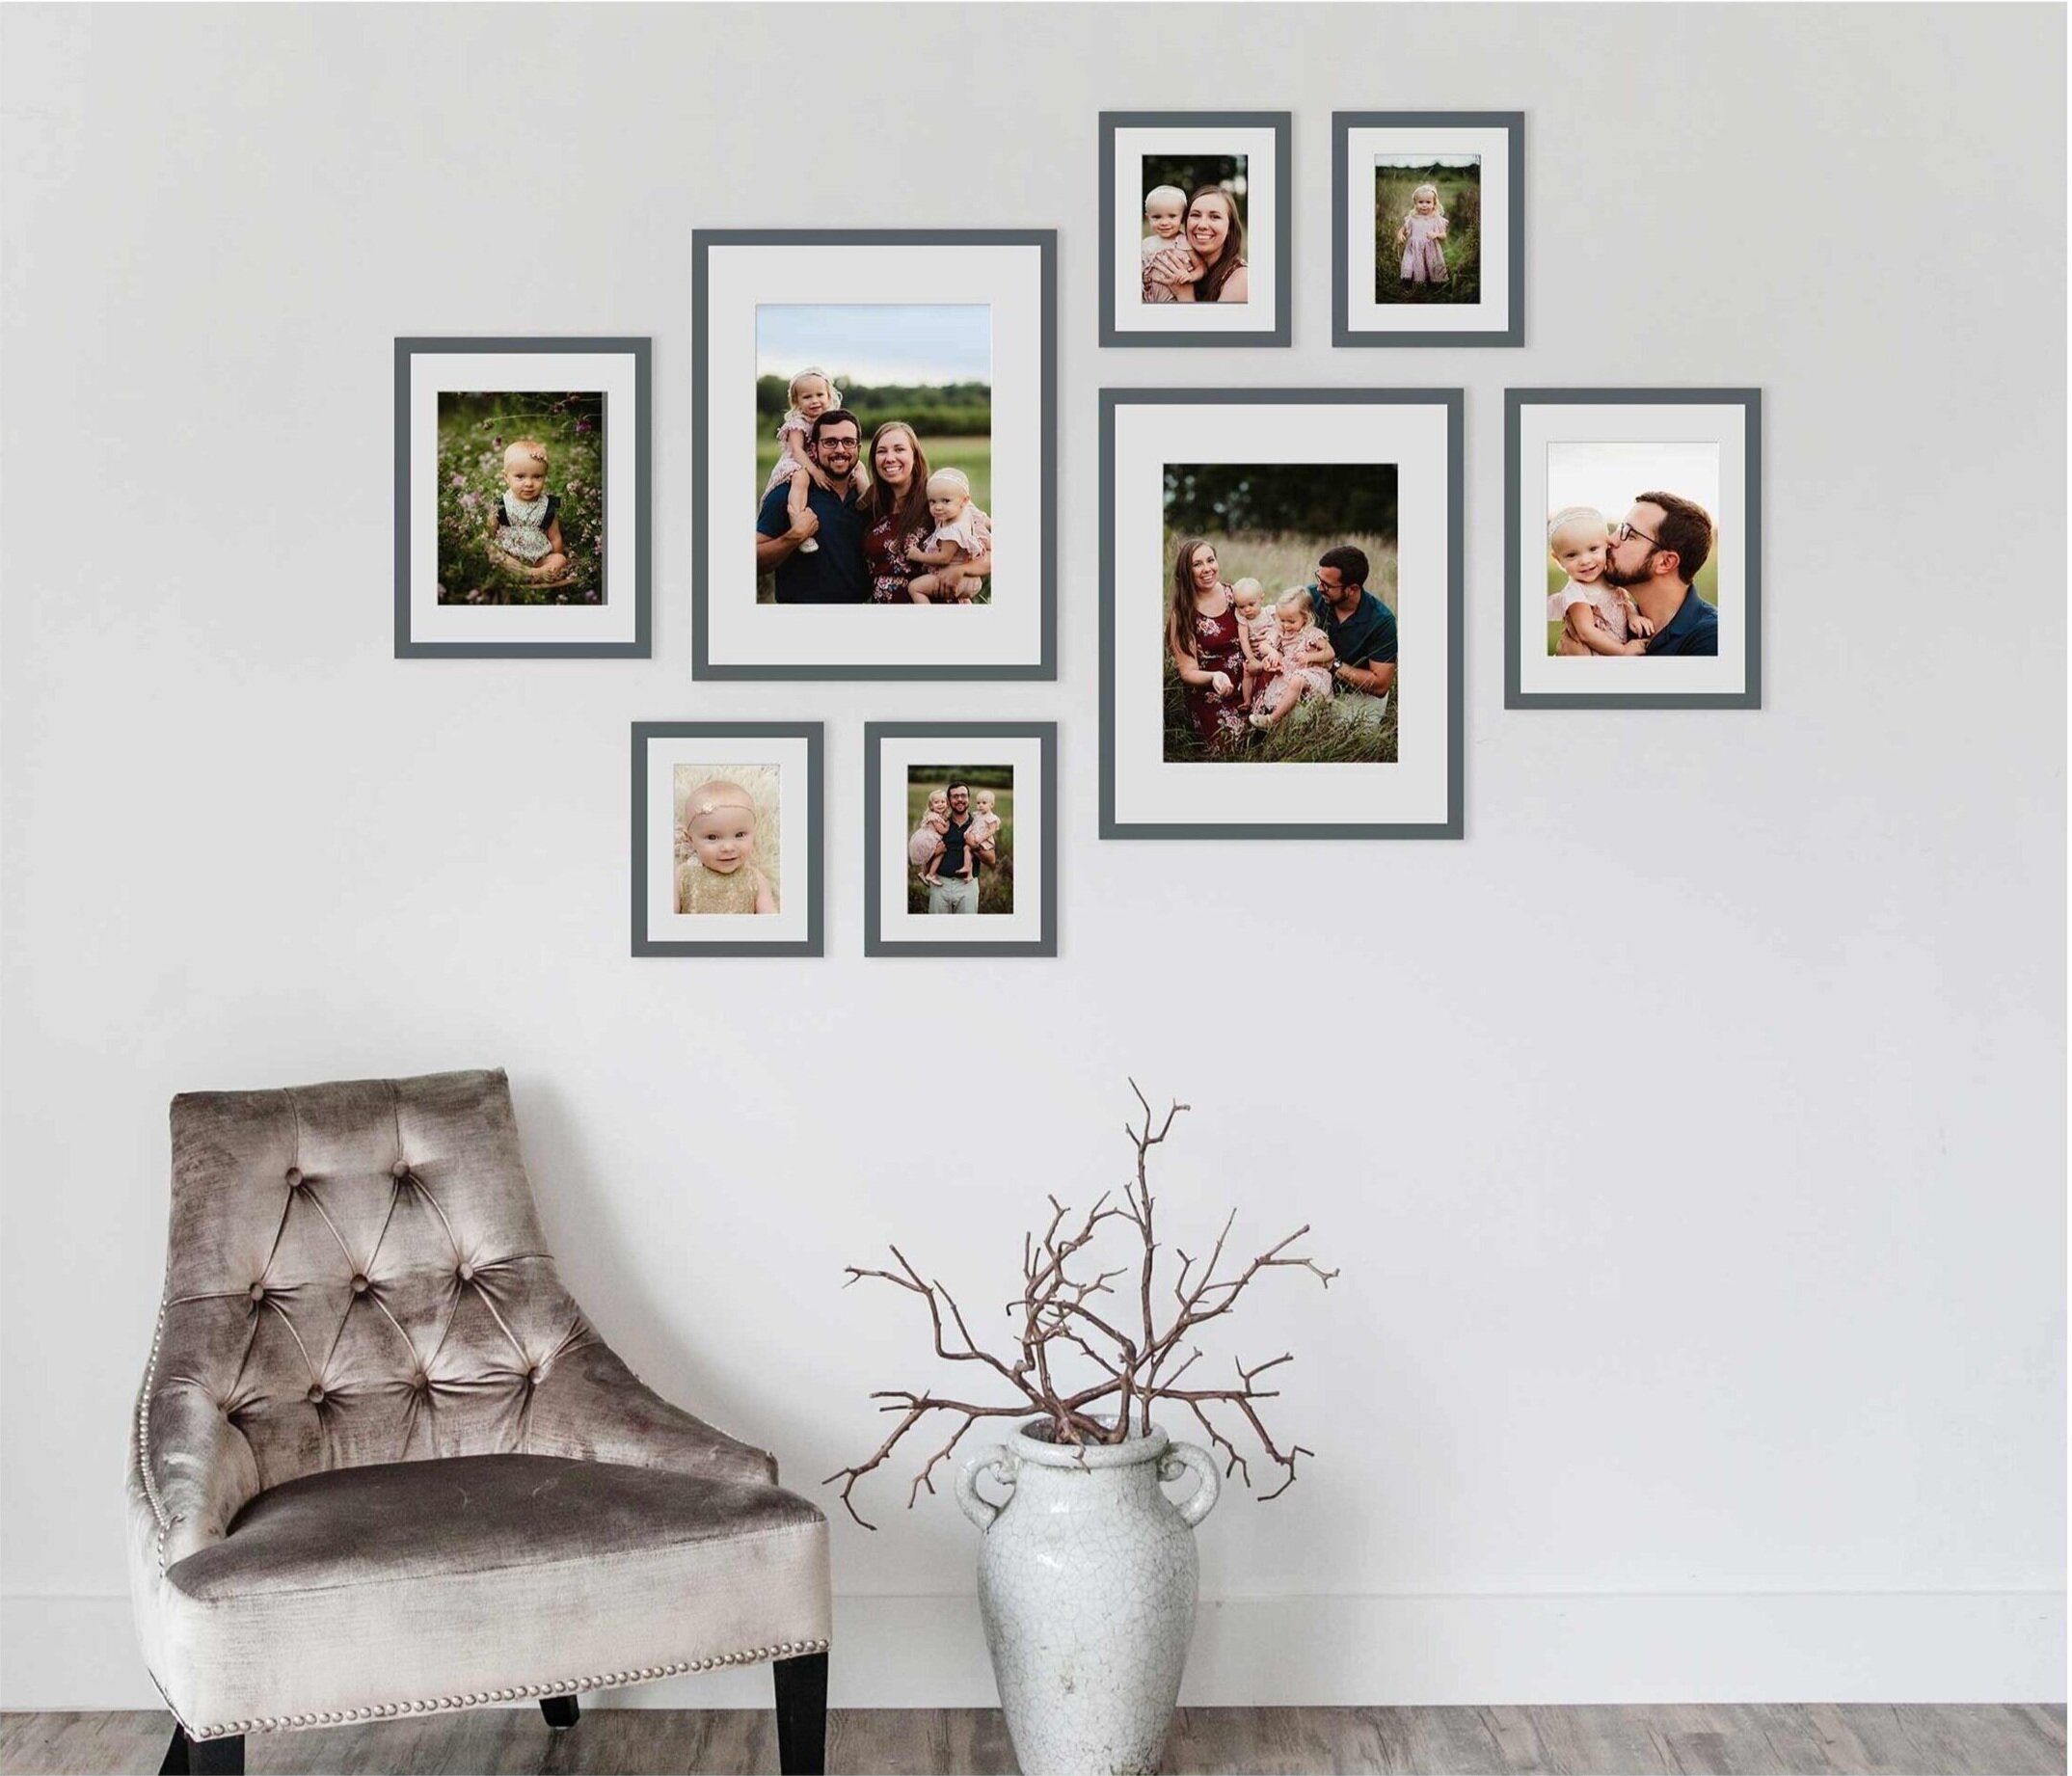 4 Stylish Ways To Hang Family Photos, Living Room Family Photo Wall Ideas